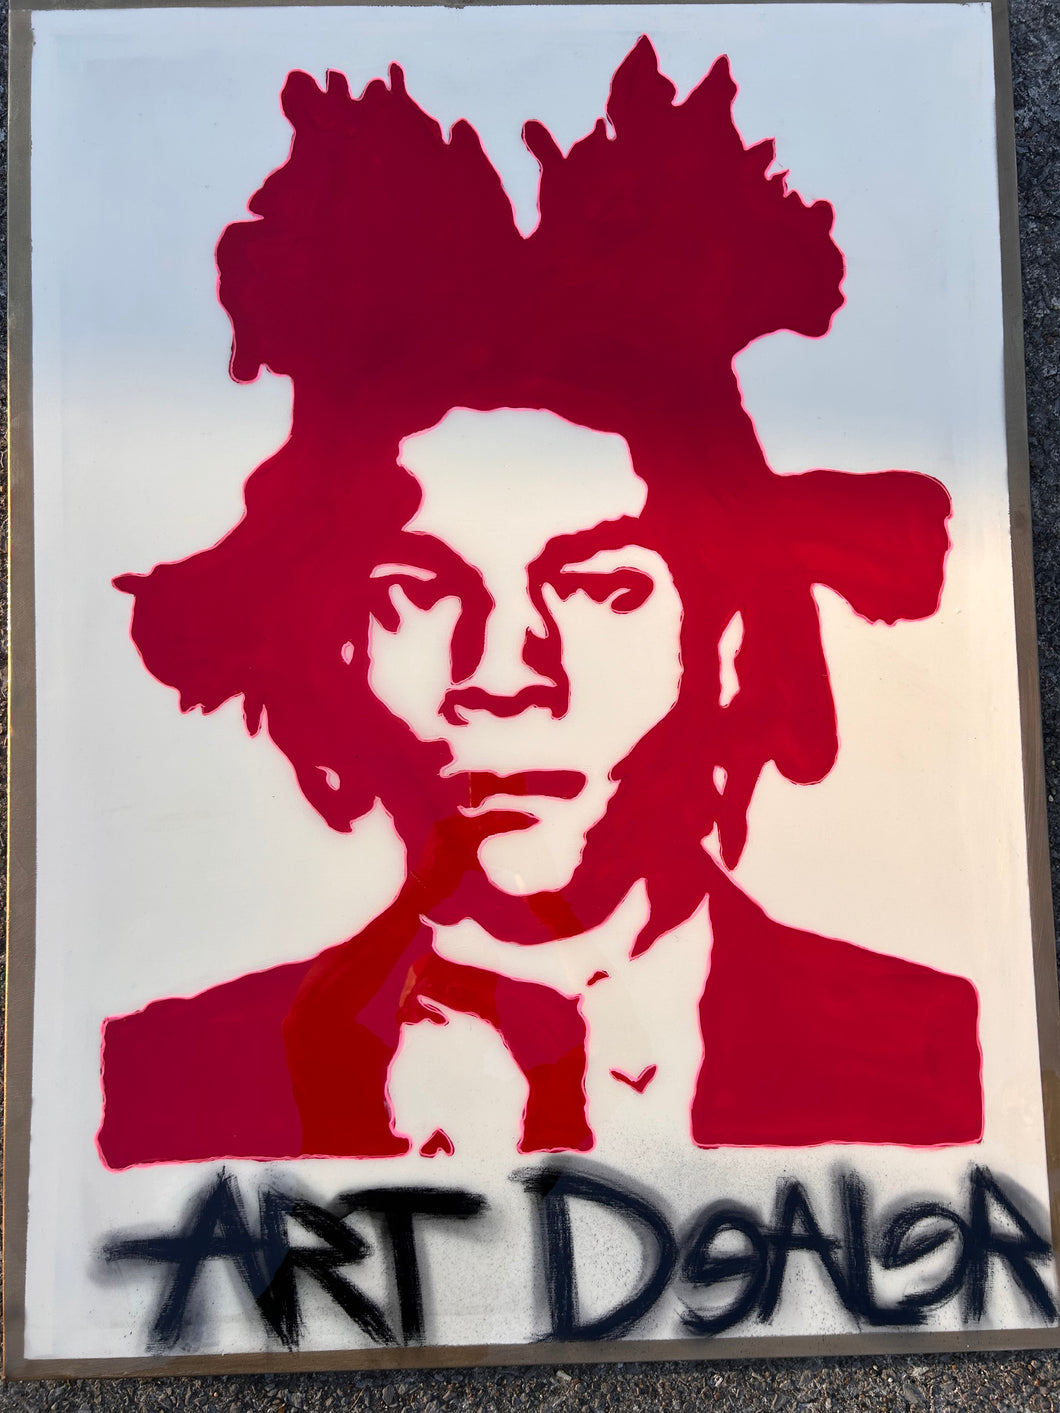 Art Dealer “Basquiat Print”